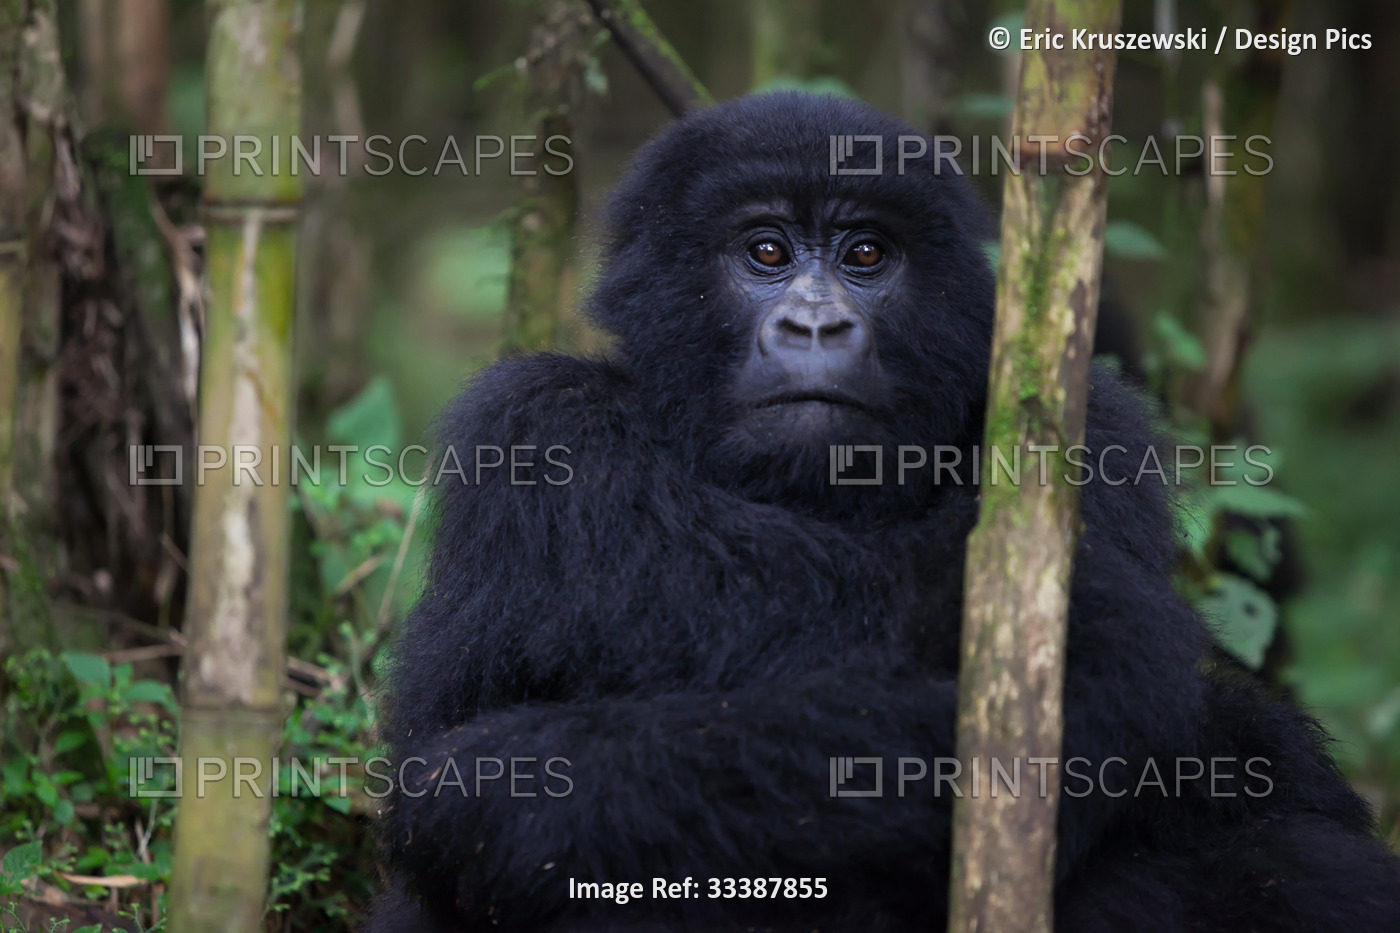 An adolescent mountain gorilla, Gorilla gorilla beringei, rests in the forest ...